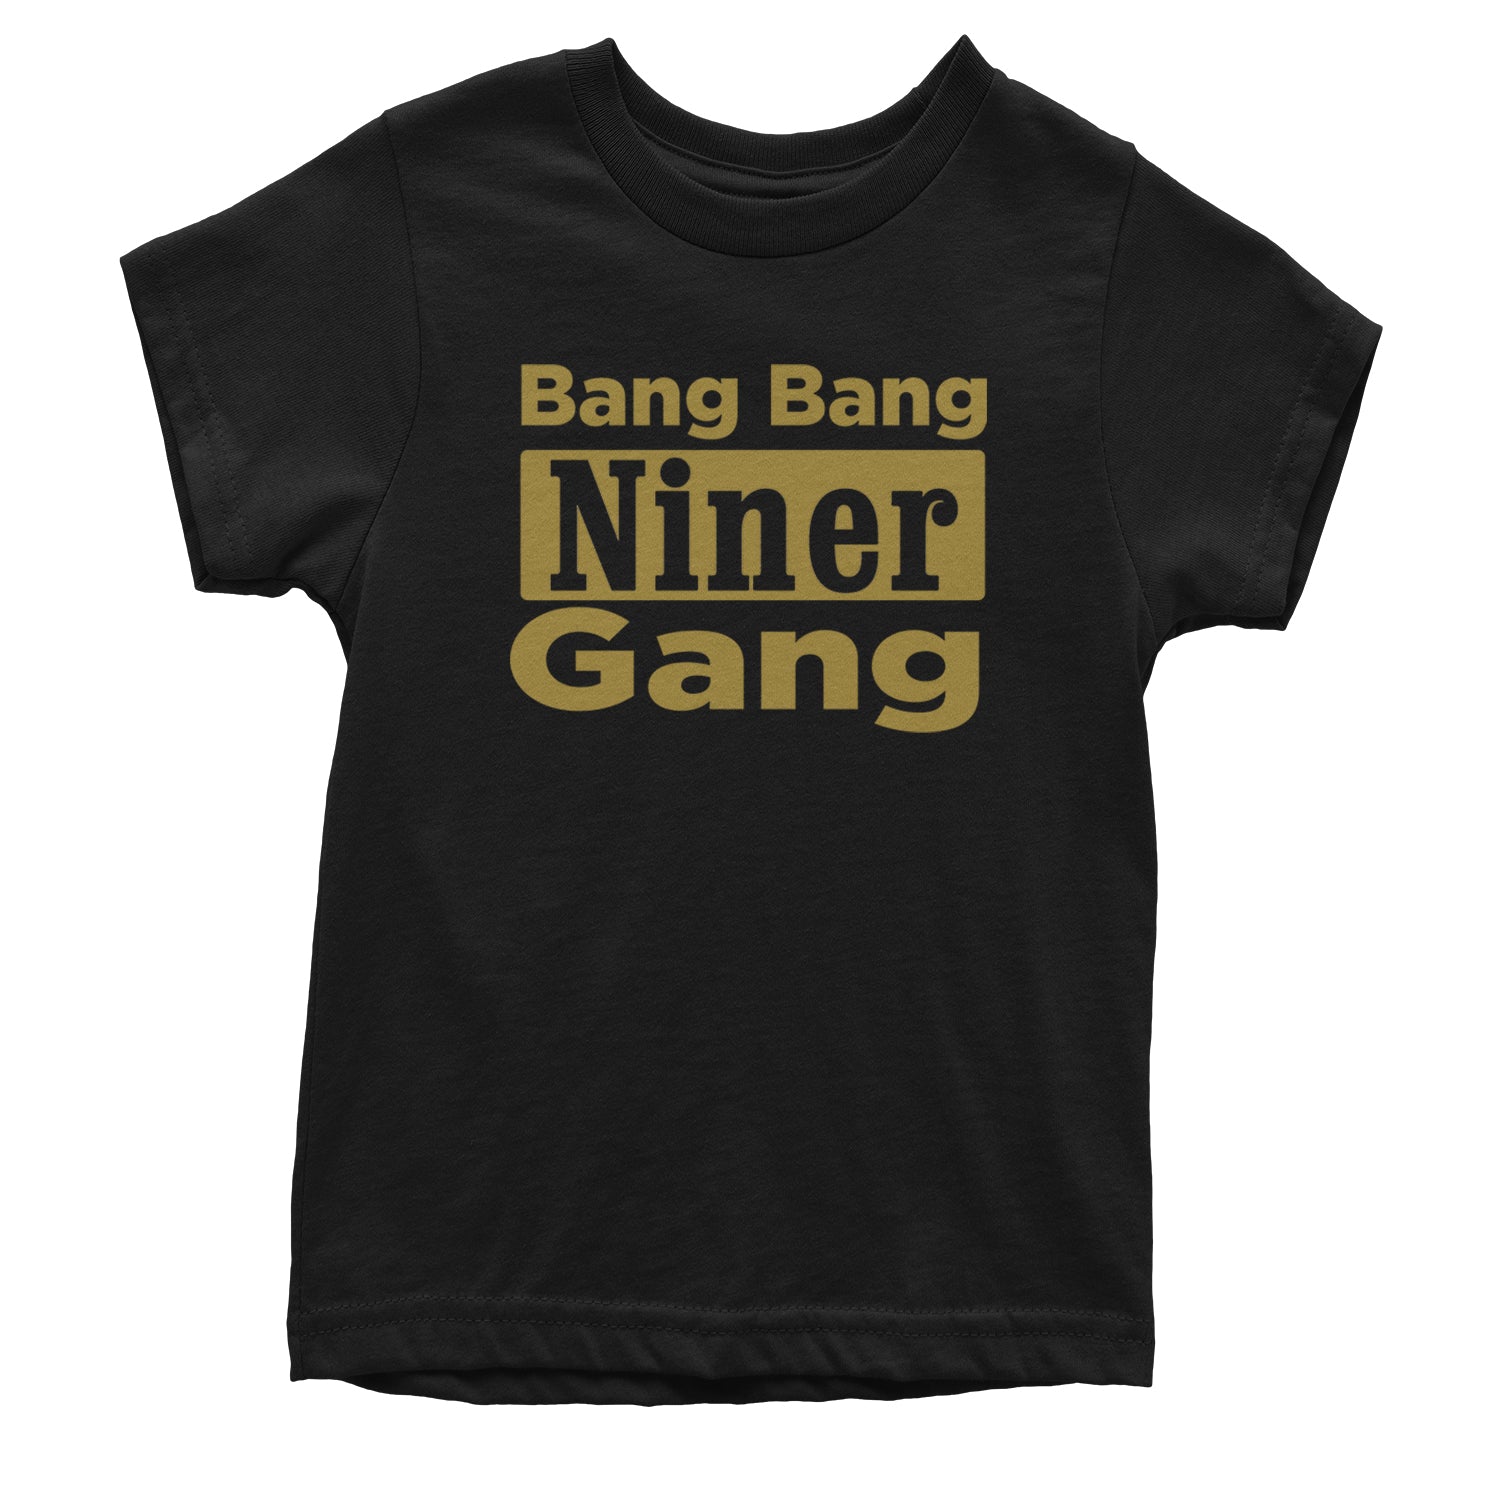 Bang Bang Niner Gang San Francisco Youth T-shirt